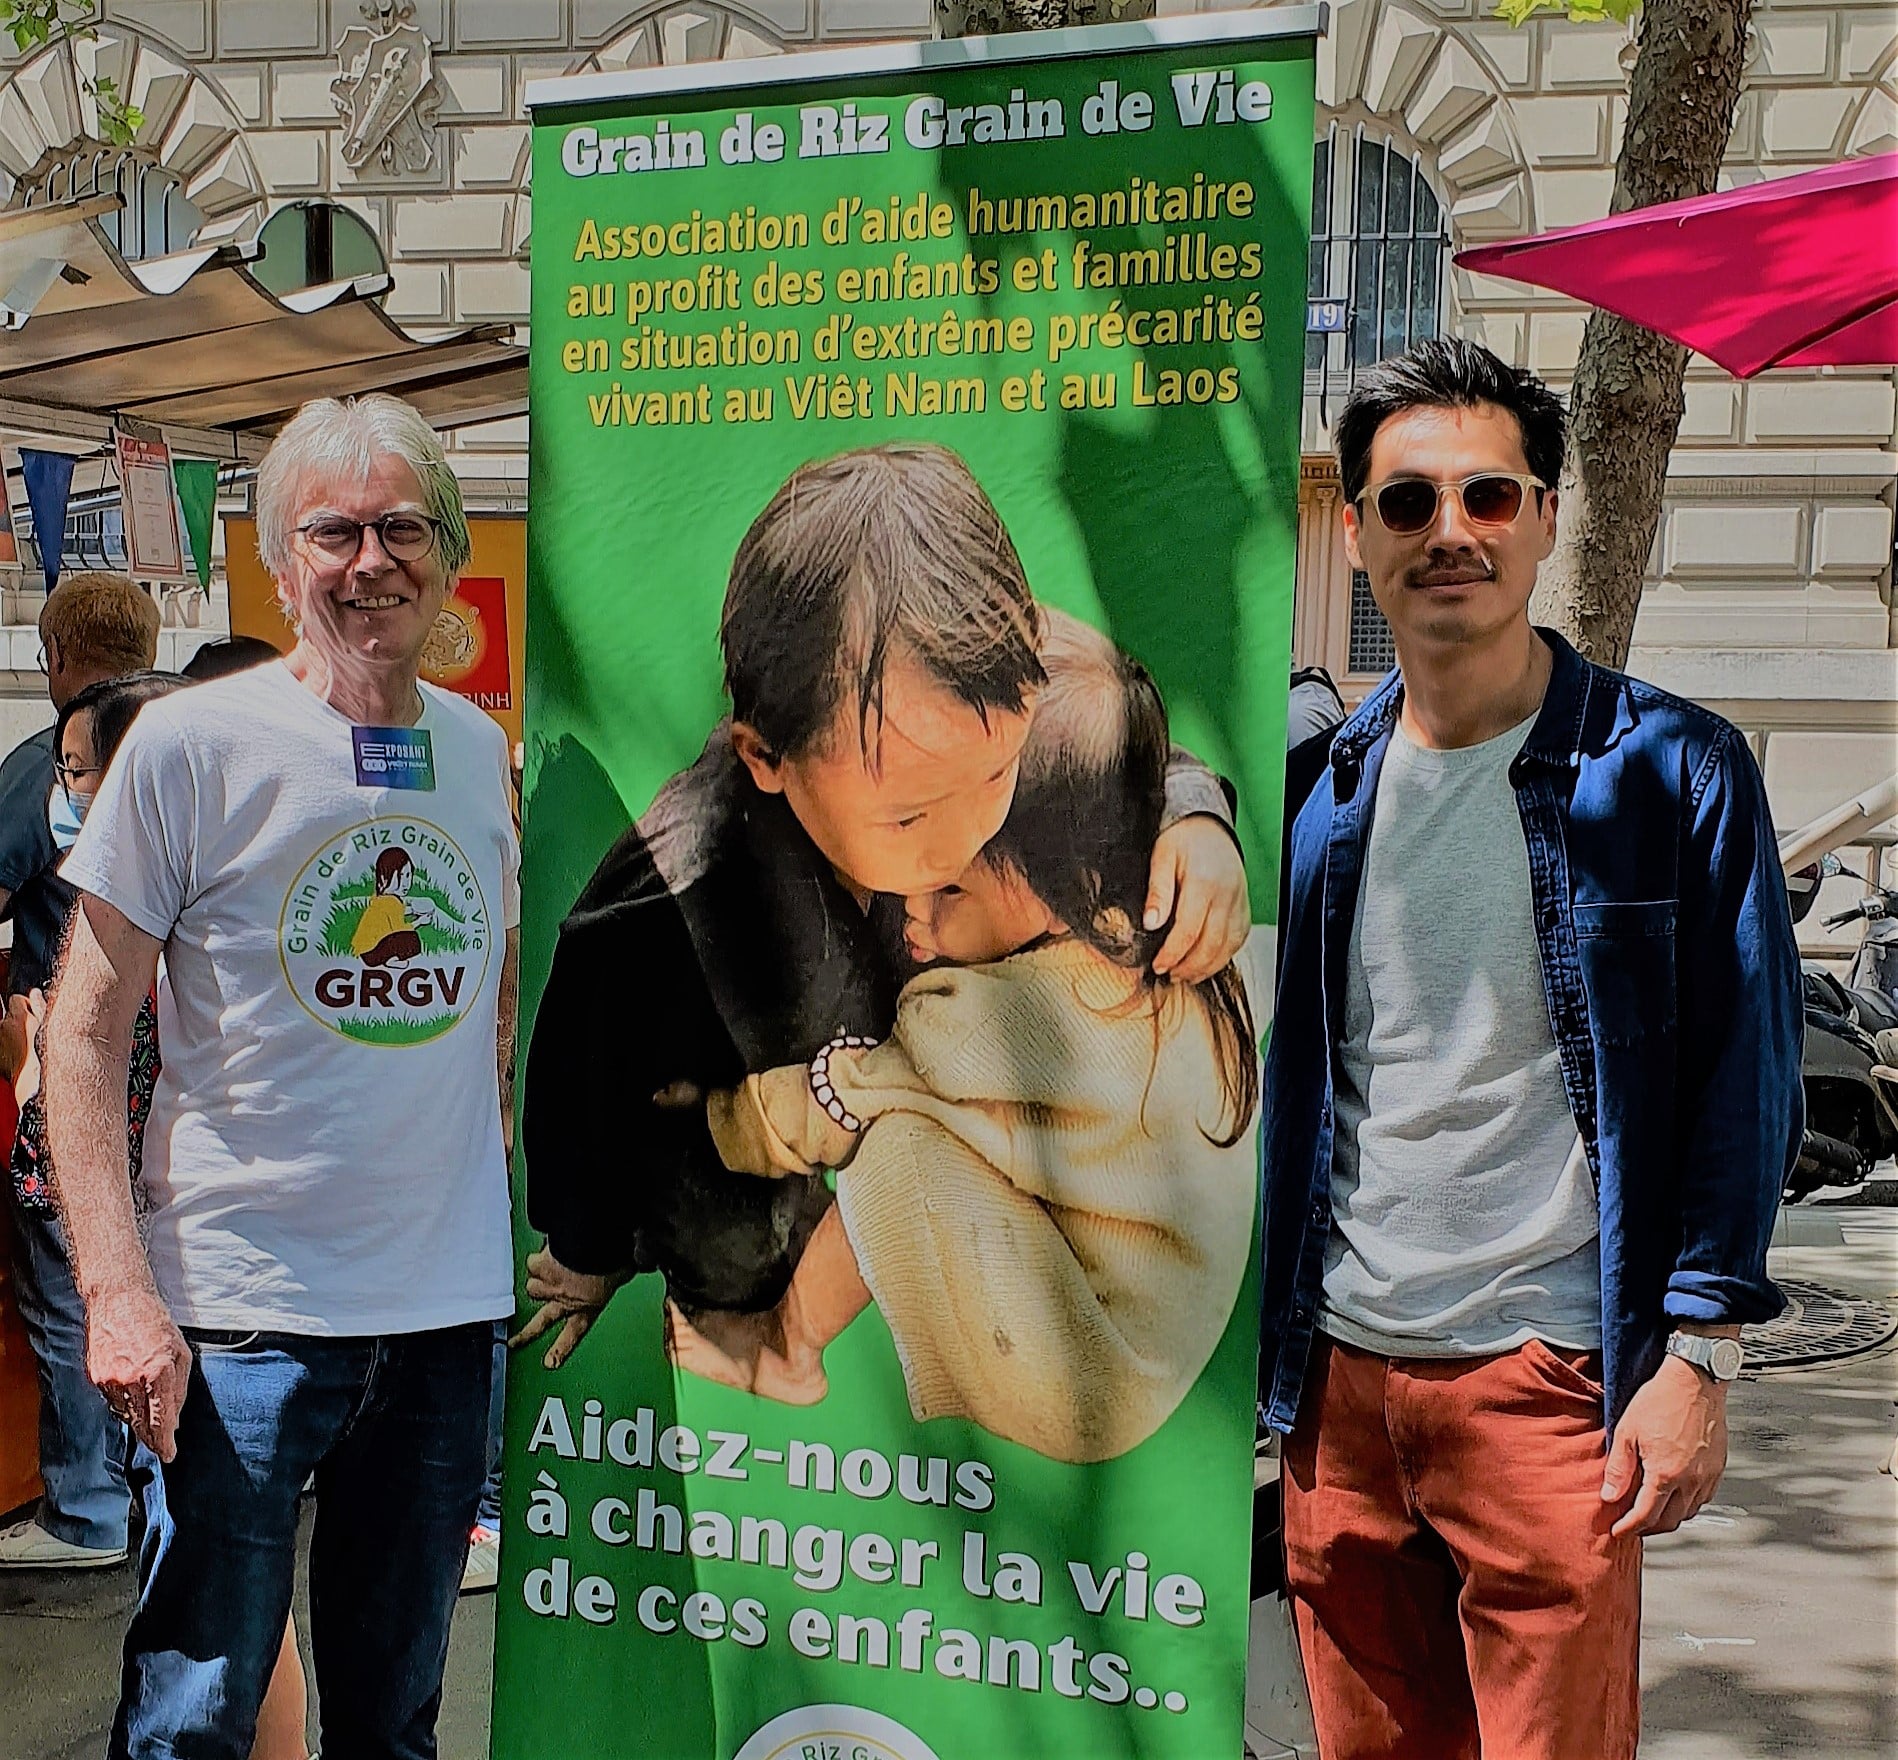 Michel Blanc, fondateur de l'association "Grain de Riz Grain de Vie" et l'acteur Frédéric Chau